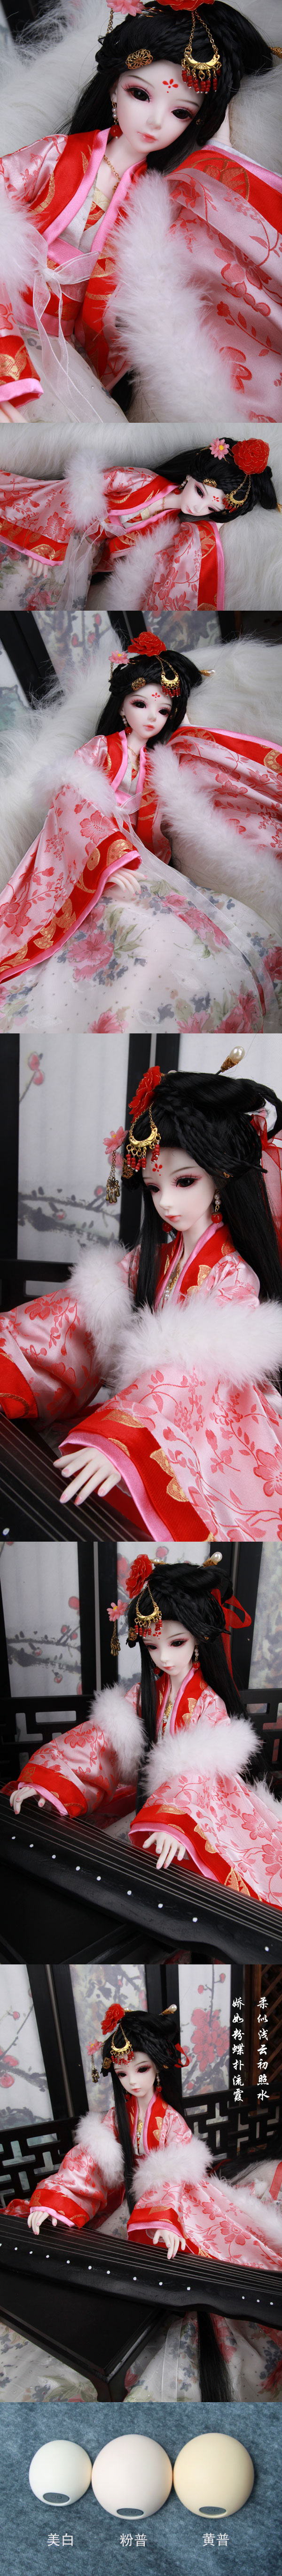 BJD Yue Er Girl 57cm Boll-jointed doll